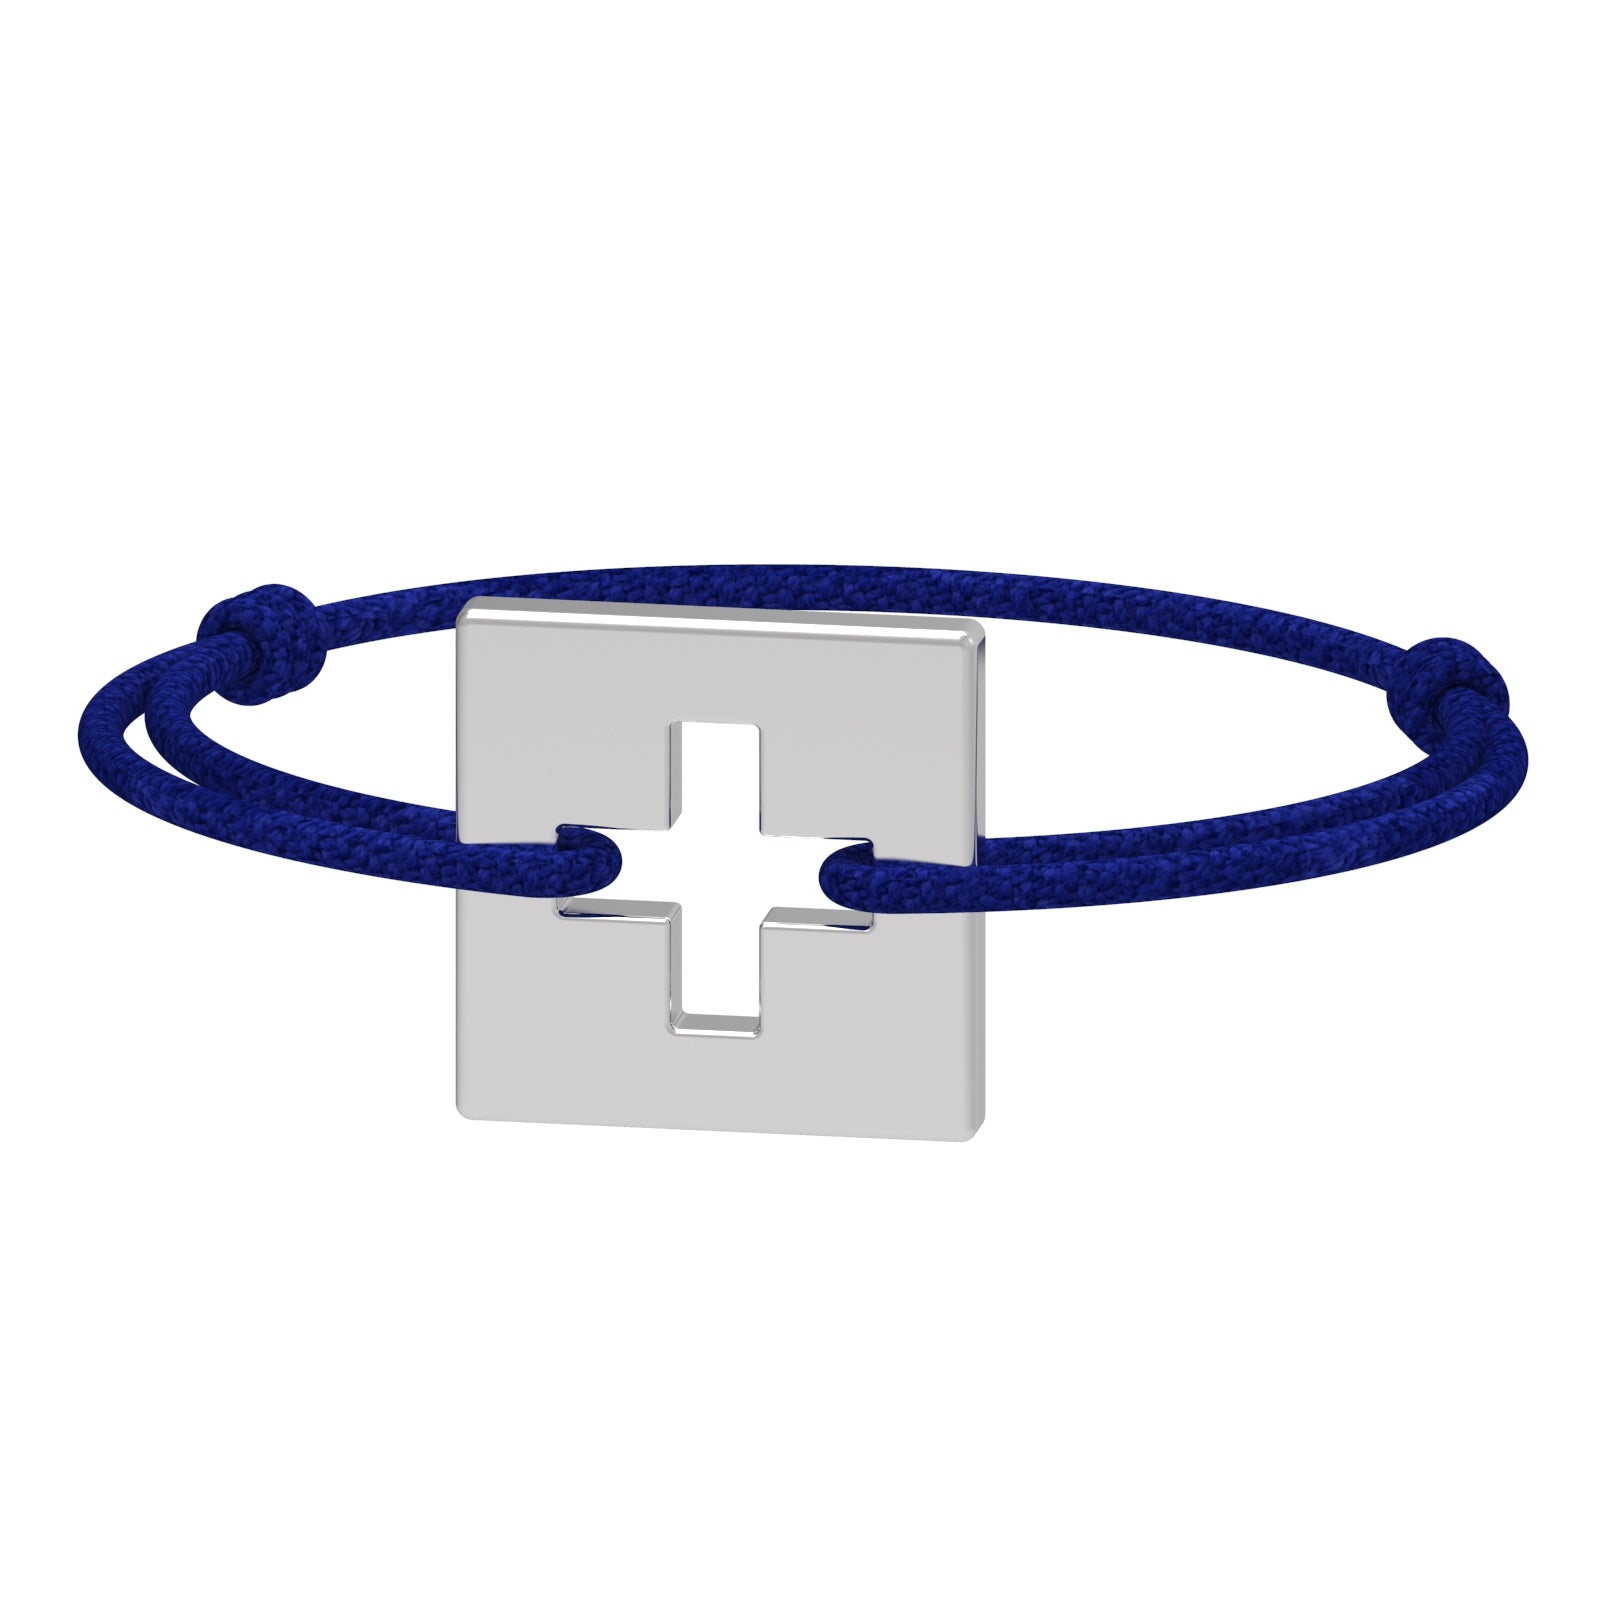 Dessin 3D du bracelet SwissFlag en argent rhodié et cordon bleu